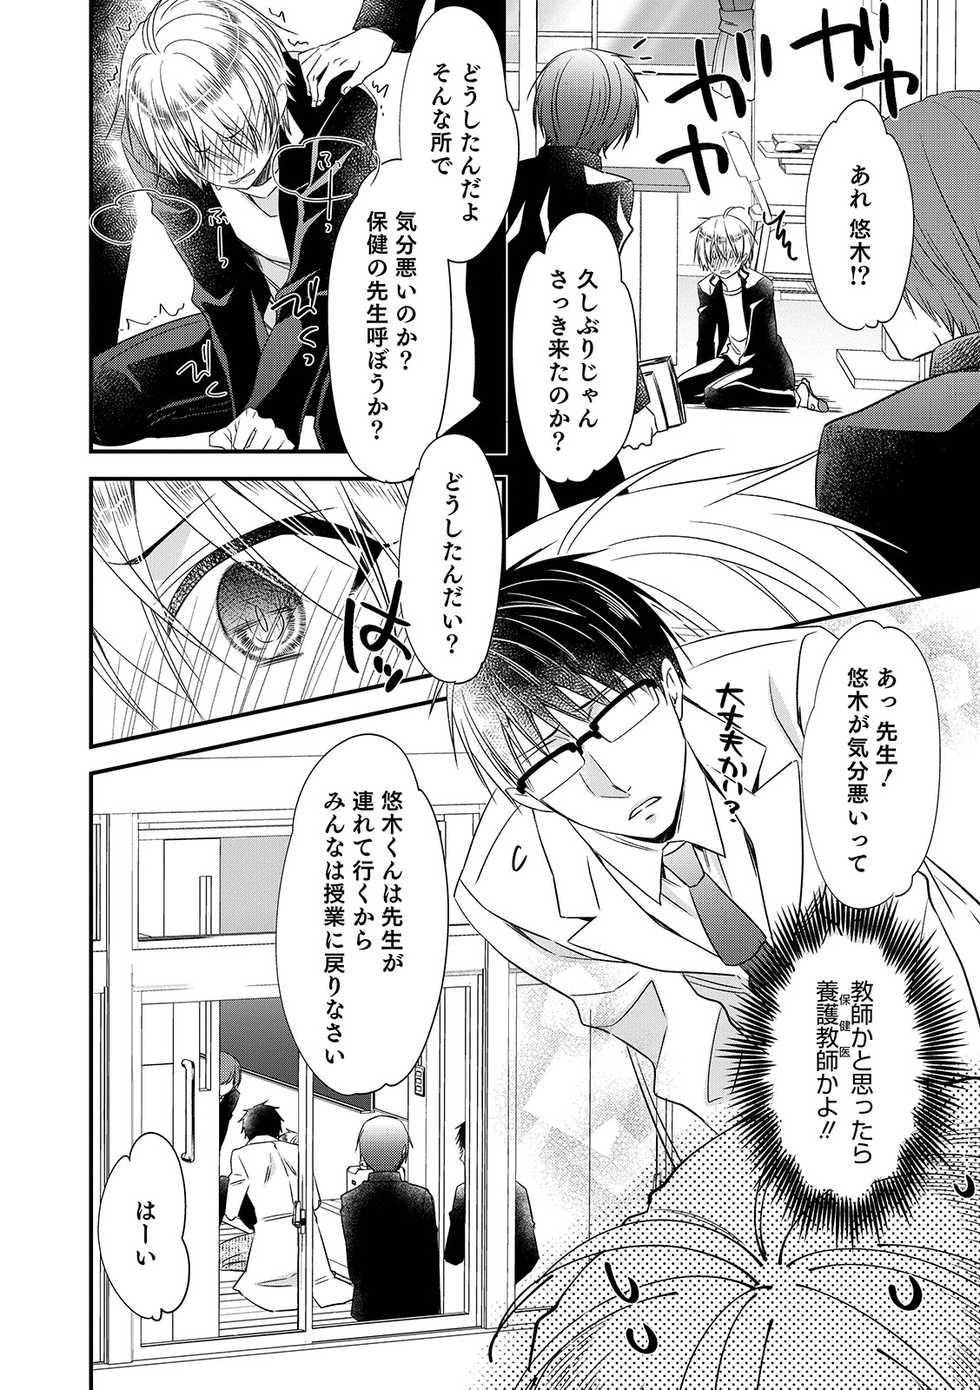 [Anthology] Otokonoko Heaven's Door 9 [Digital] - Page 36